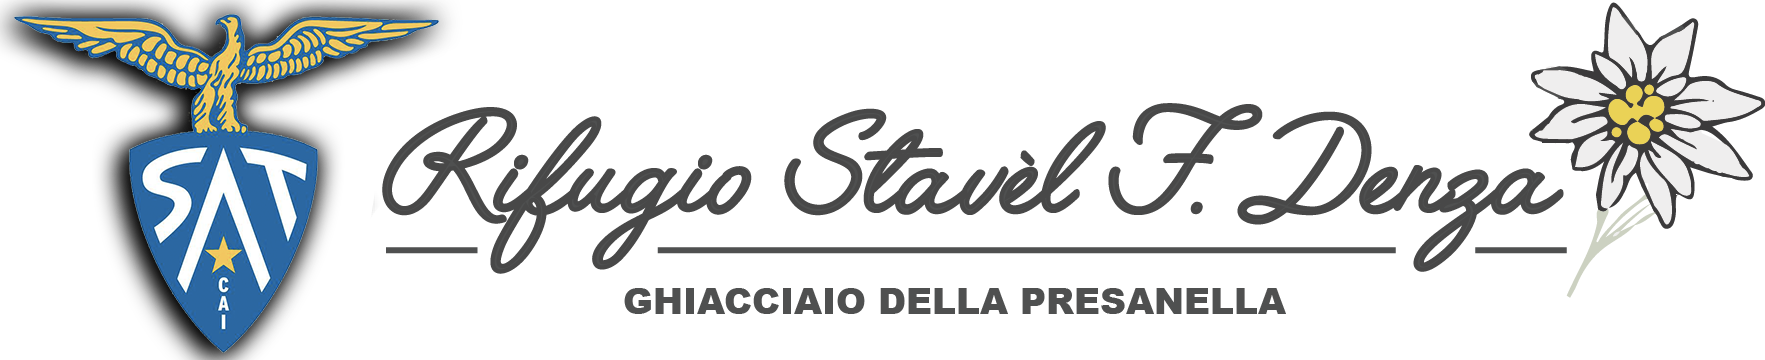 Rifugio Stavel Francesco Denza